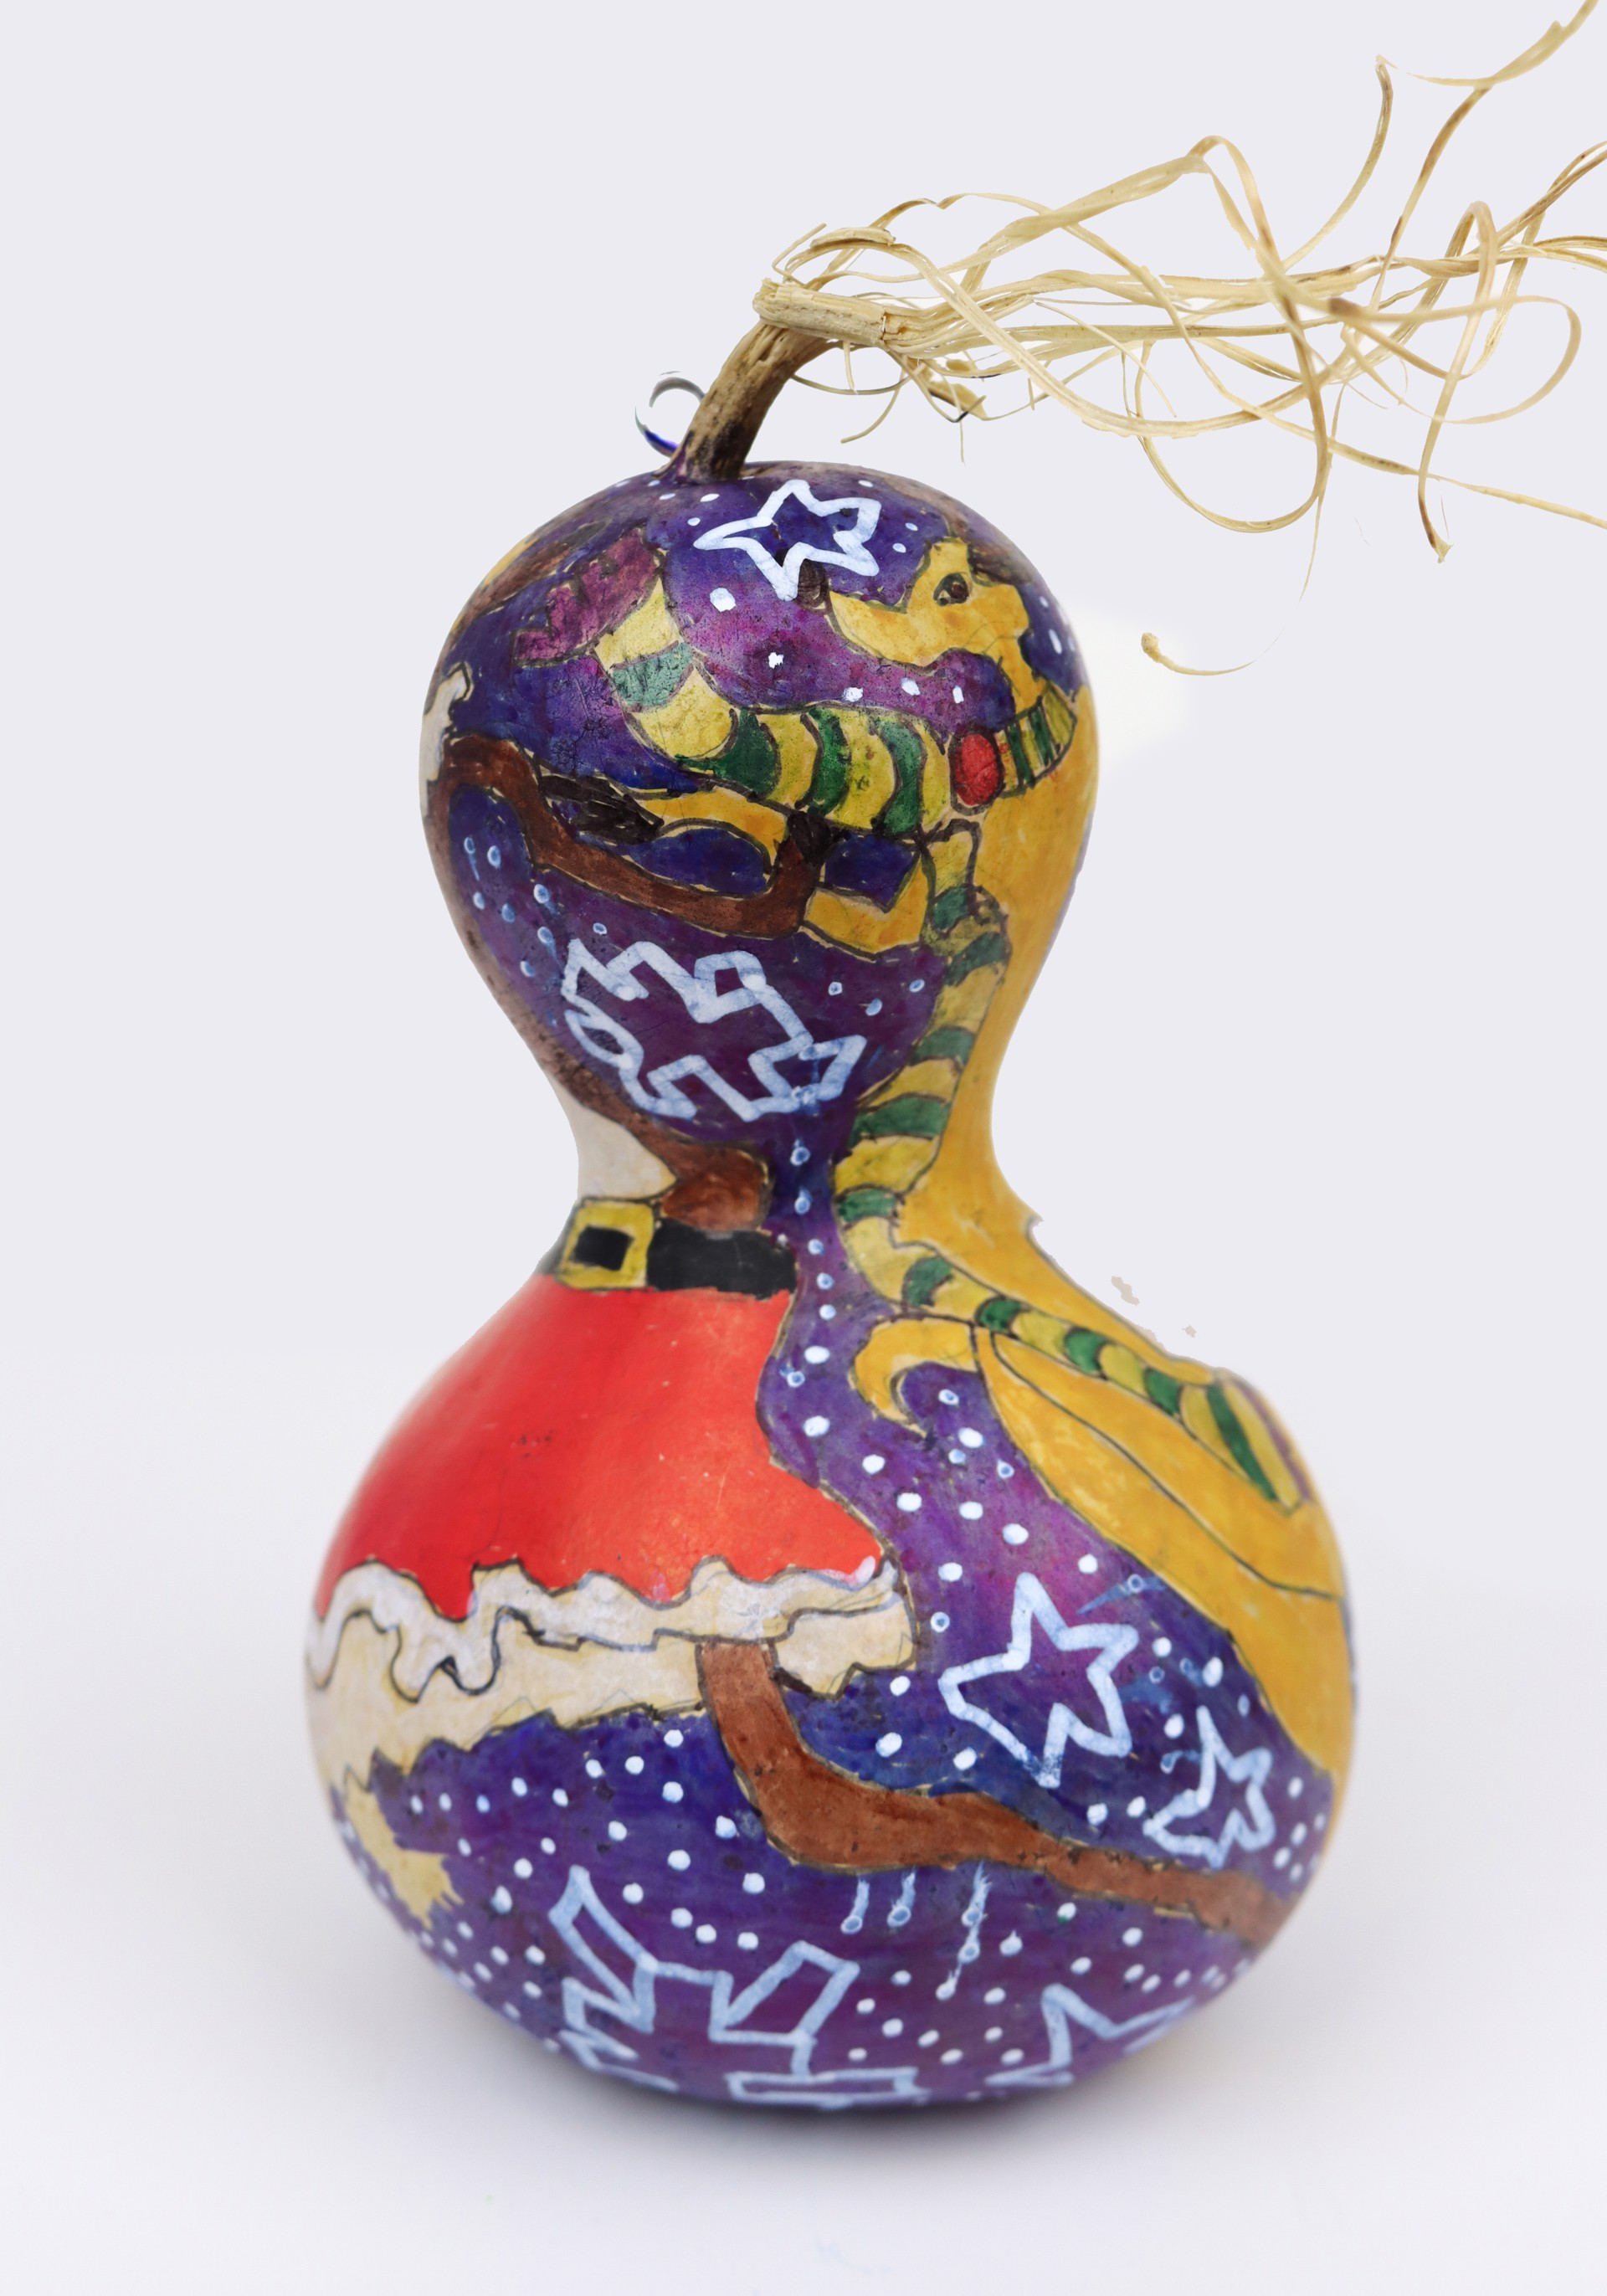 Dancing Reindeer (gourd ornament) by Vanessa Monroe